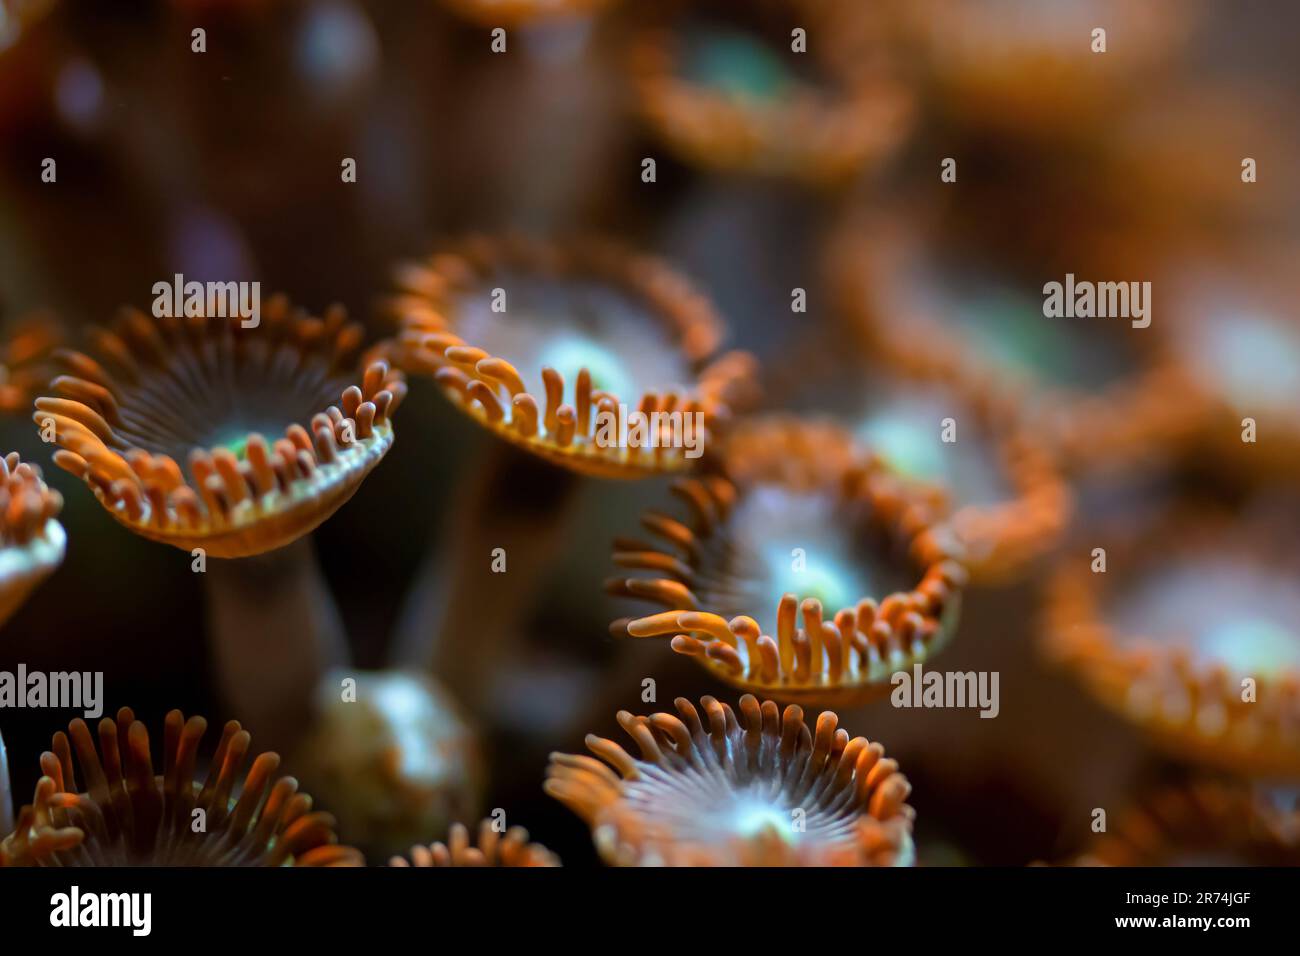 Photo sous-marine - fleur d'orange comme les coraux mous, espèces de Zoanthus, émettant de la lumière sous ampoule UV, arrière-plan marin abstrait, profondeur de champ peu profonde Banque D'Images